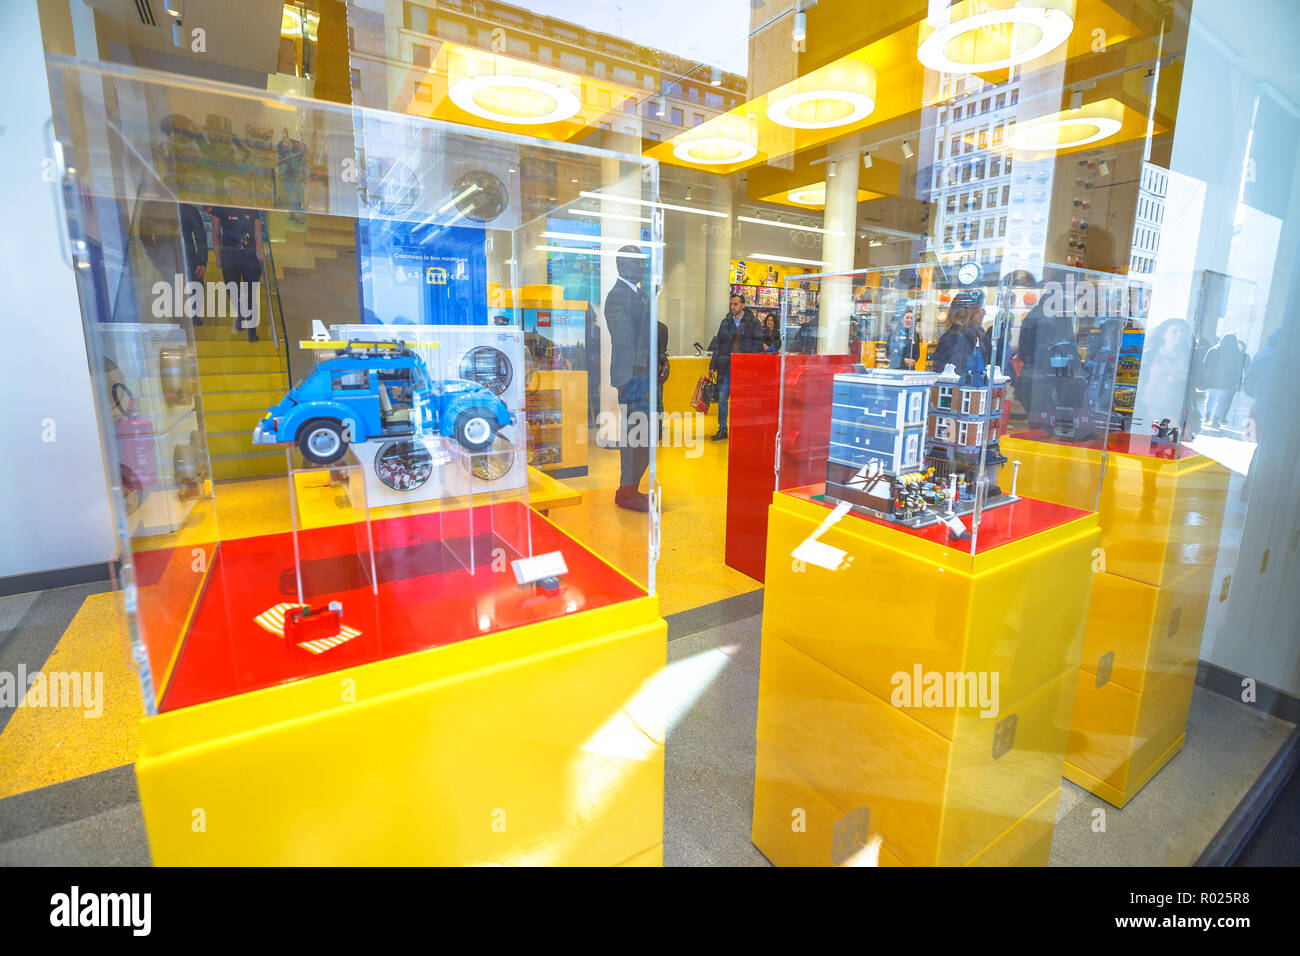 MILAN, ITALIE - mars 7, 2017 : l'extérieur de la fenêtre des briques LEGO store de Milan, des briques Lego. Sur la Piazza San Babila square à la fin du Corso Vittorio Emanuele II de la Piazza Duomo Square Banque D'Images